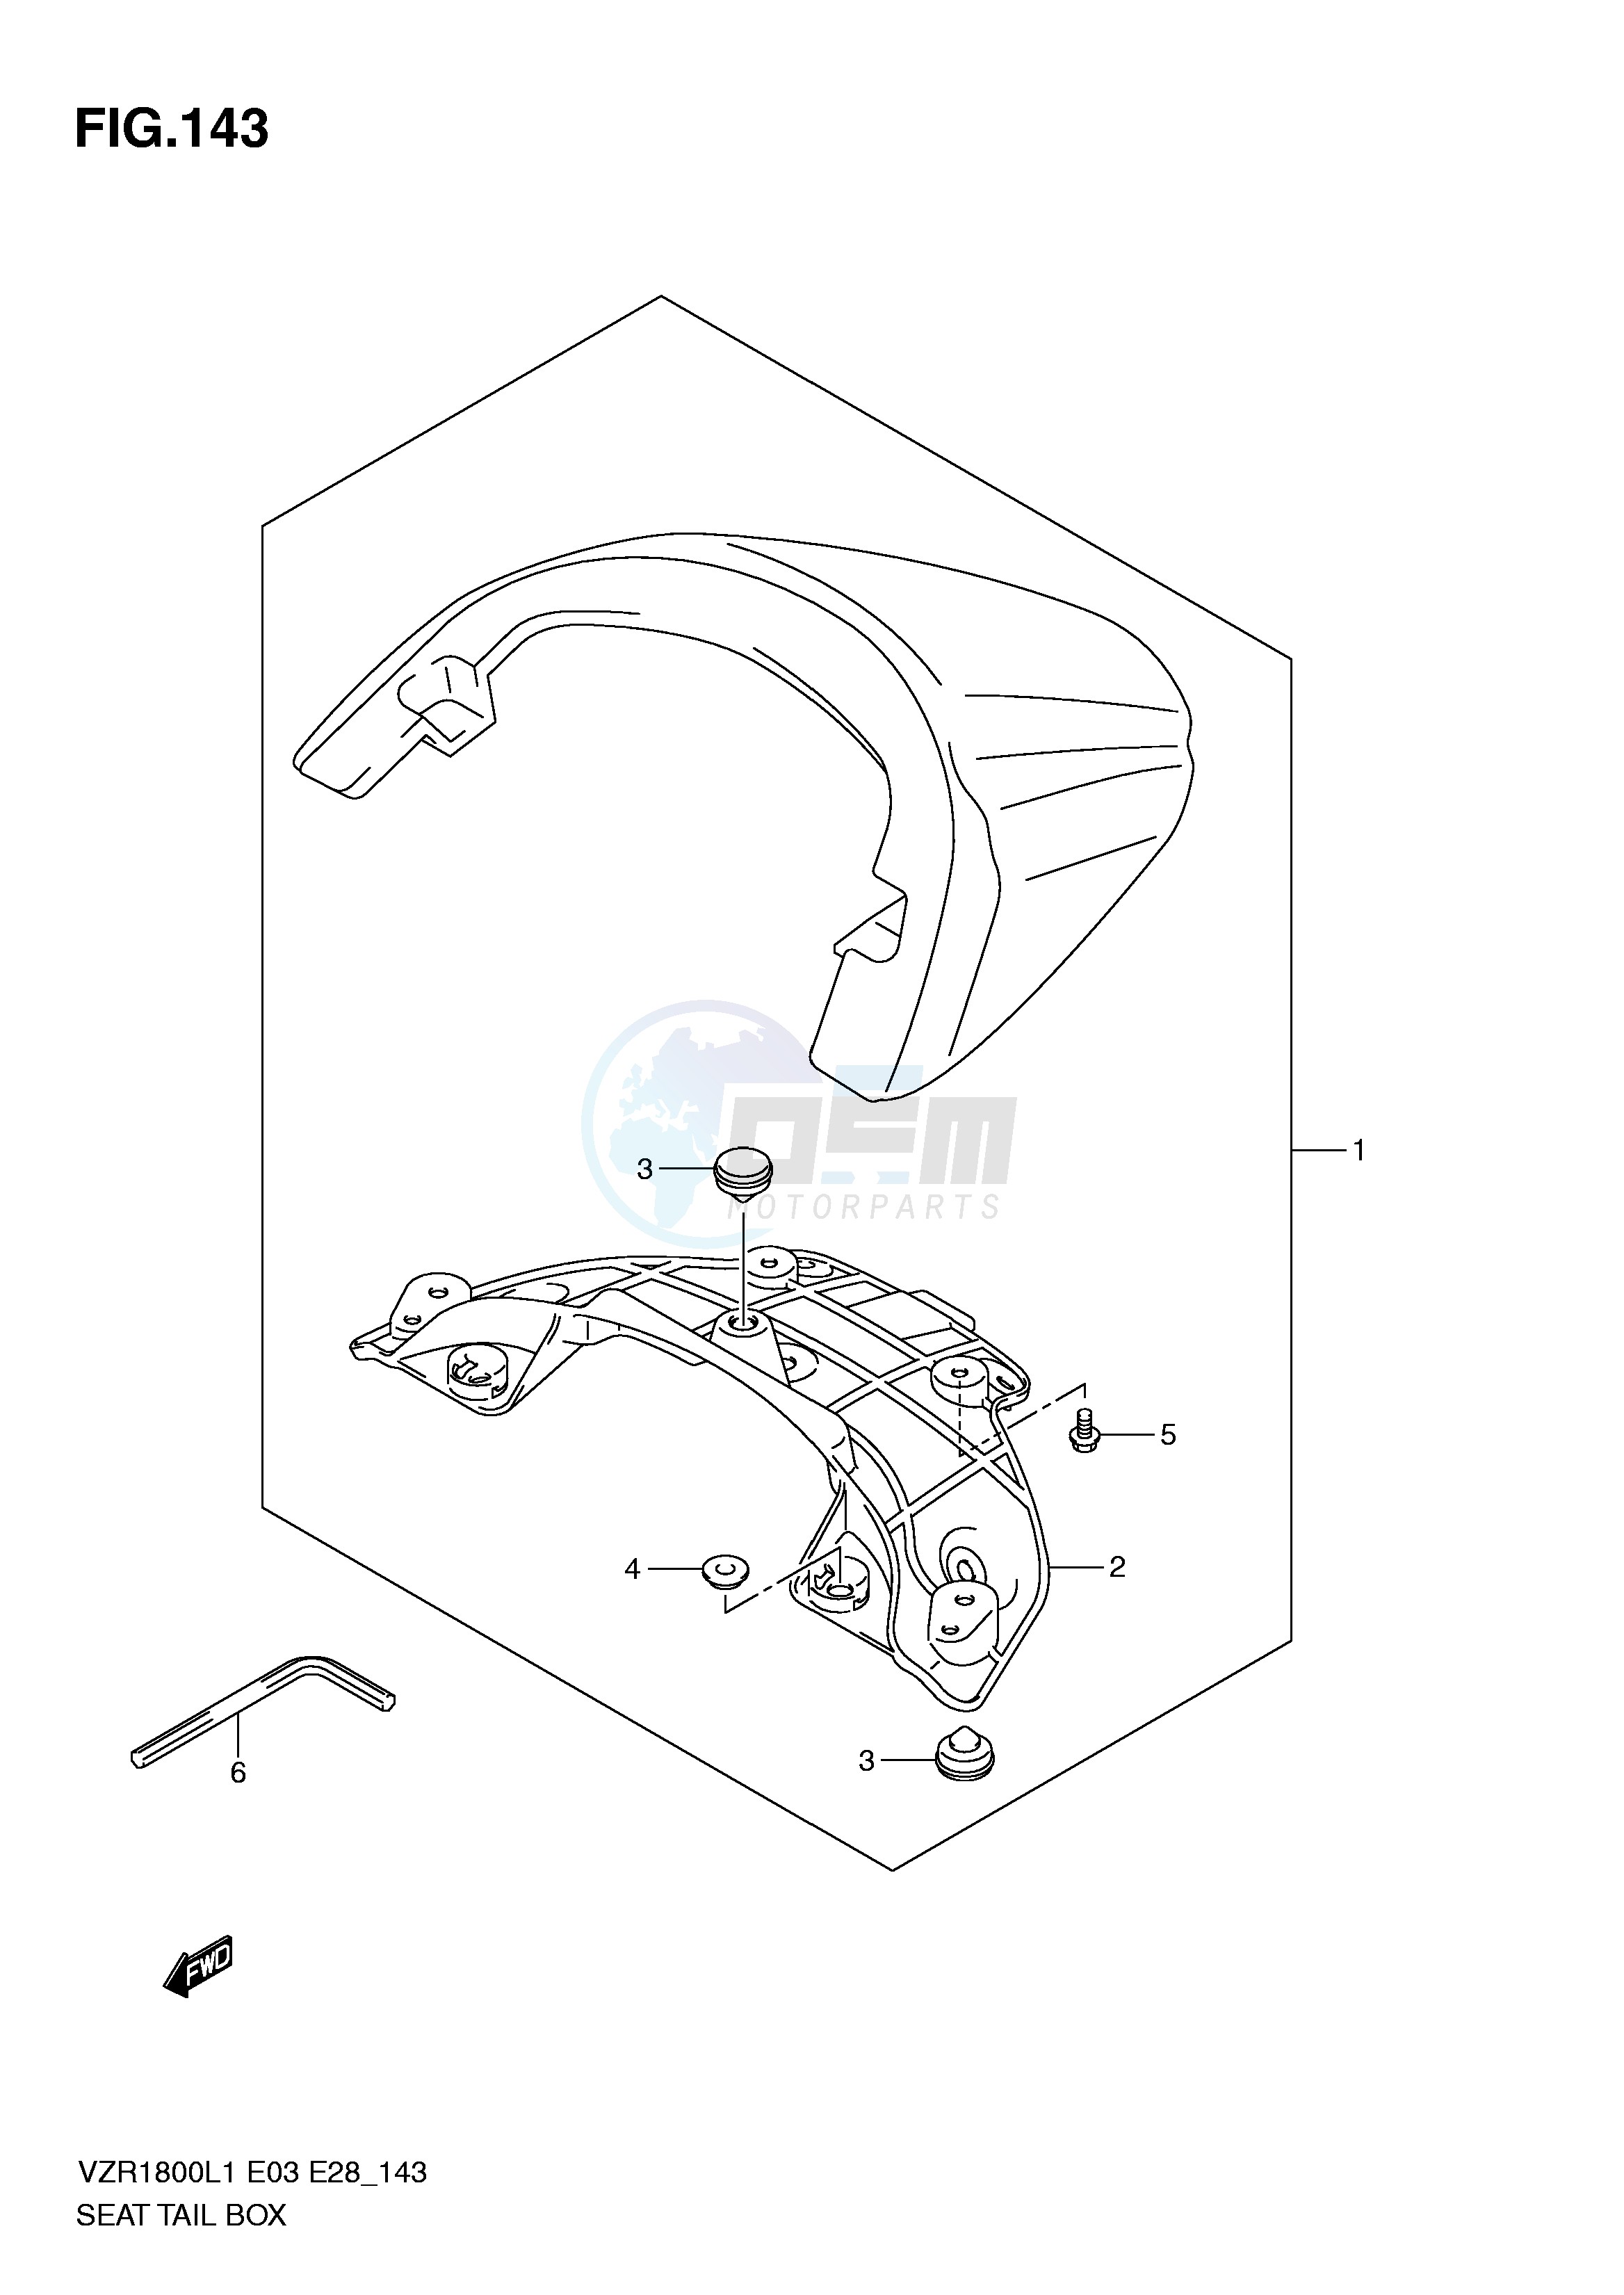 SEAT TAIL BOX (VZR1800ZL1 E28) blueprint